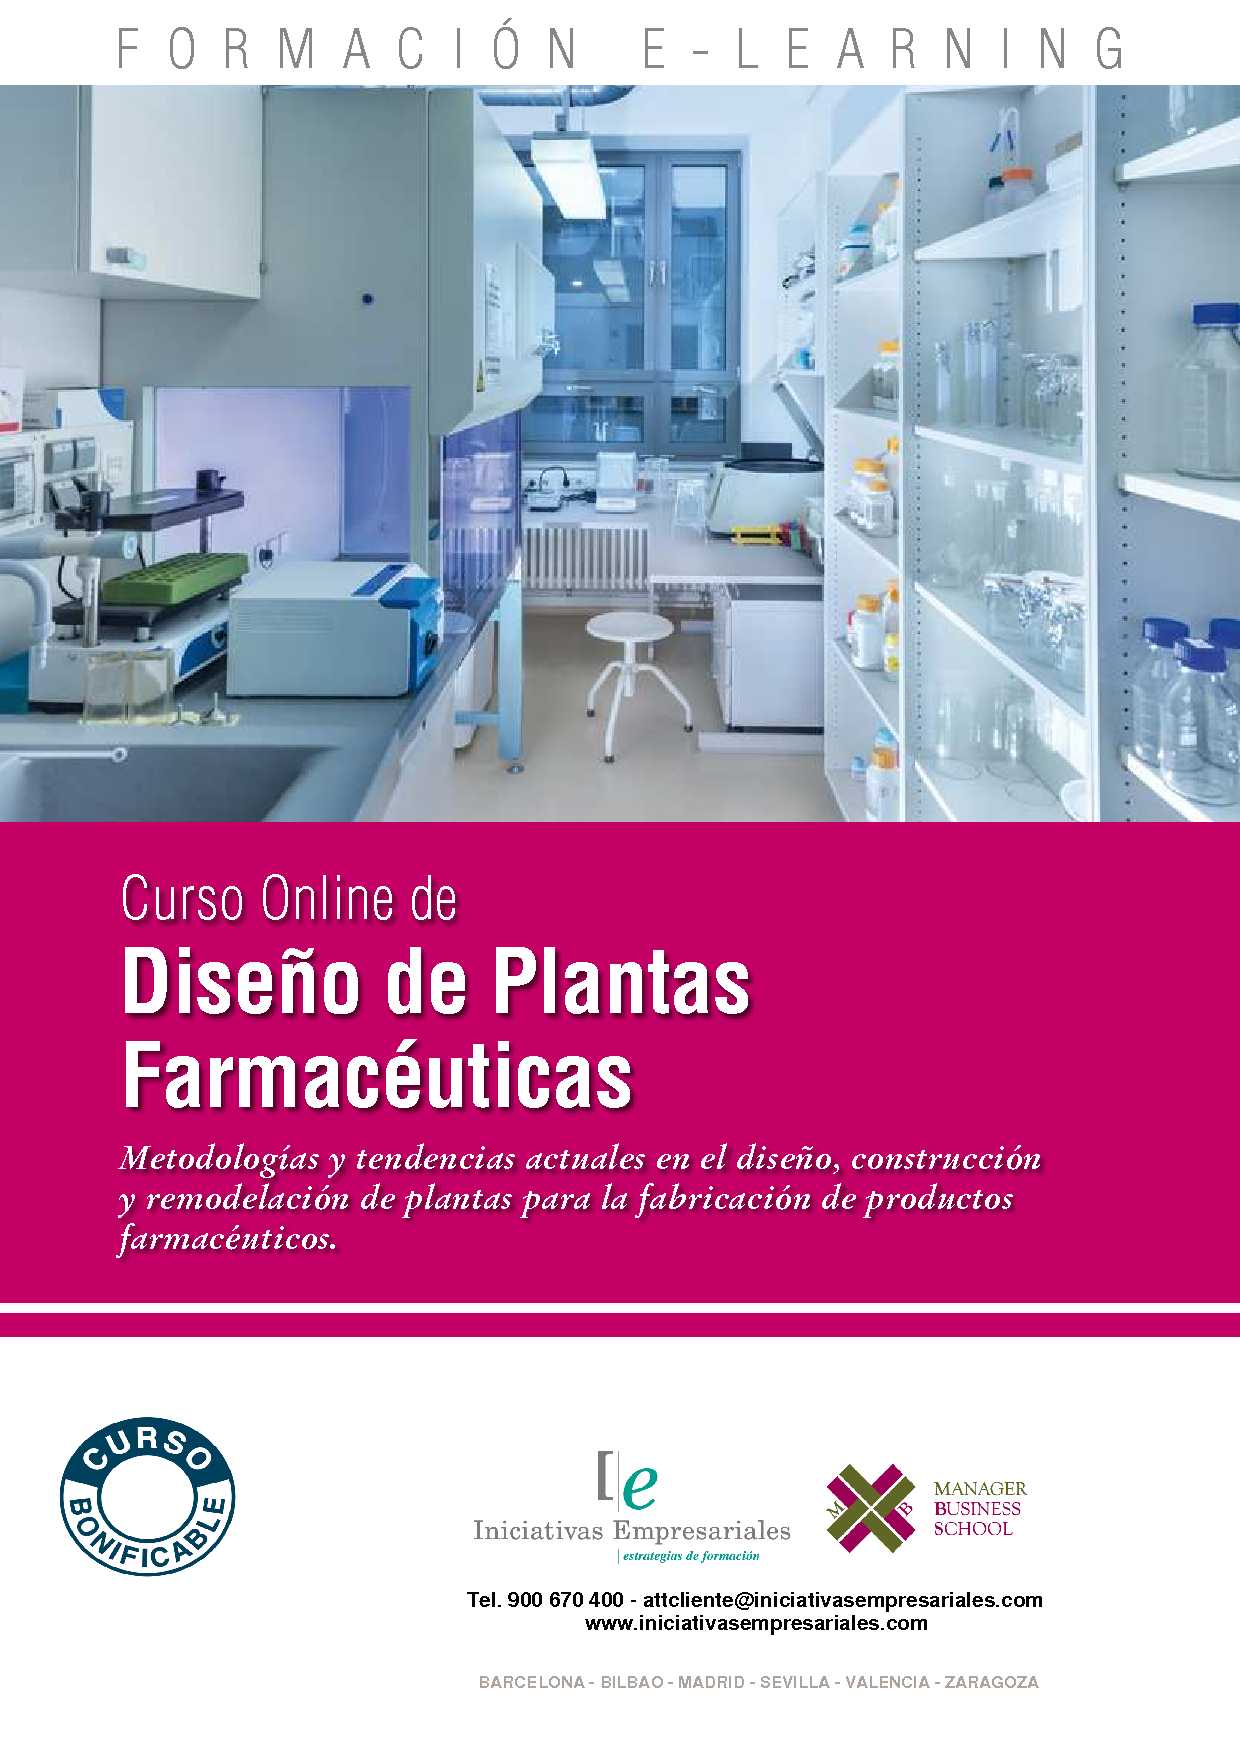 Diseño de Plantas Farmacéuticas